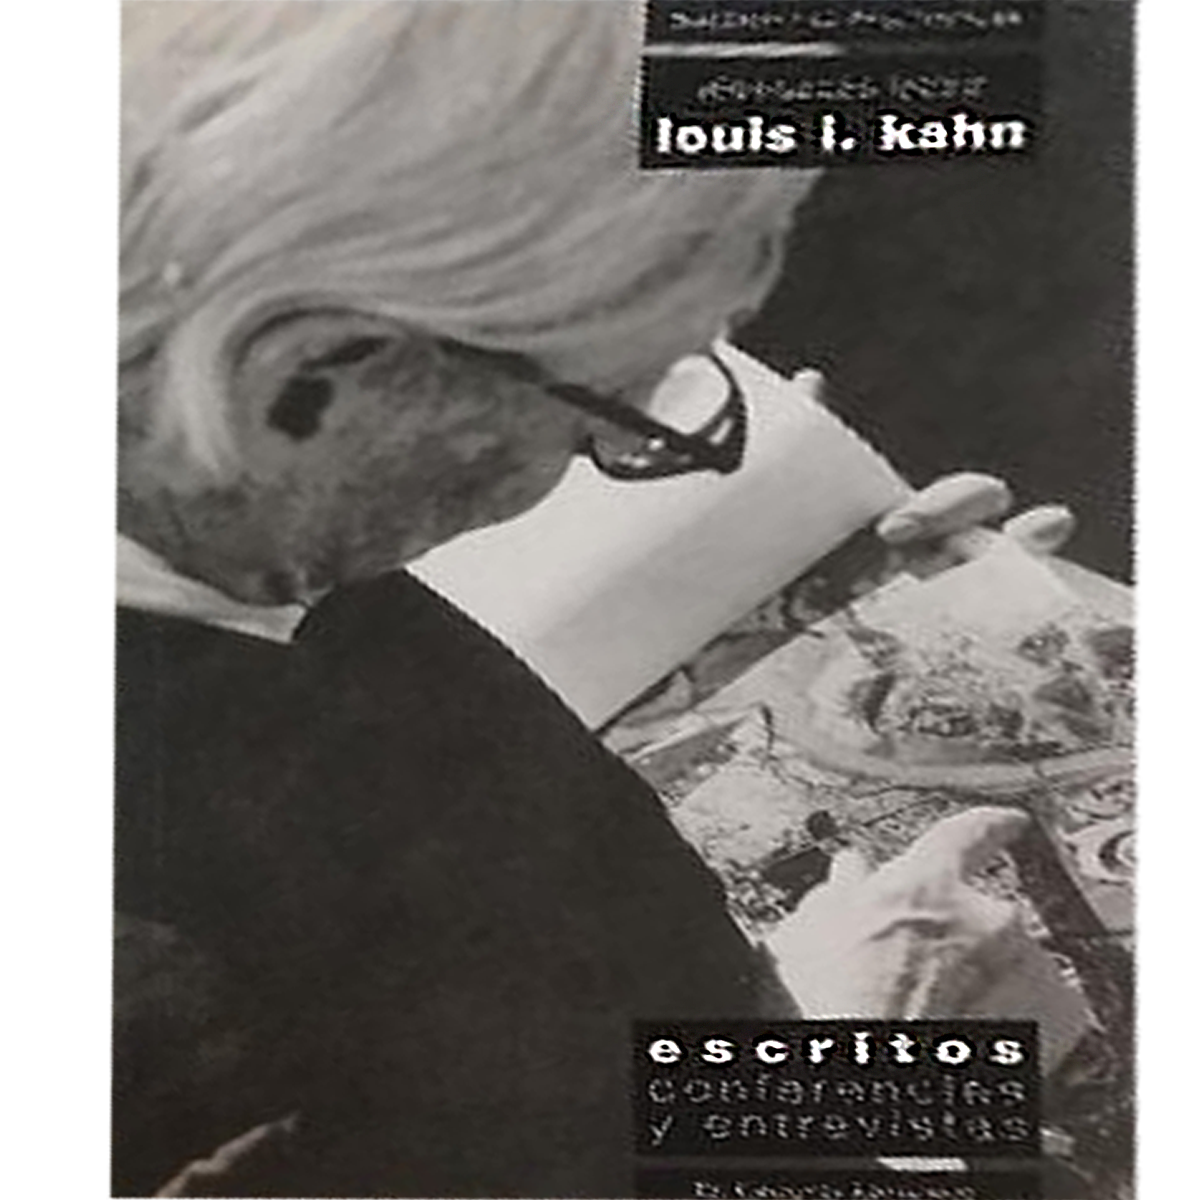 Louis I. Kahn: escritos, conferencias y entrevistas